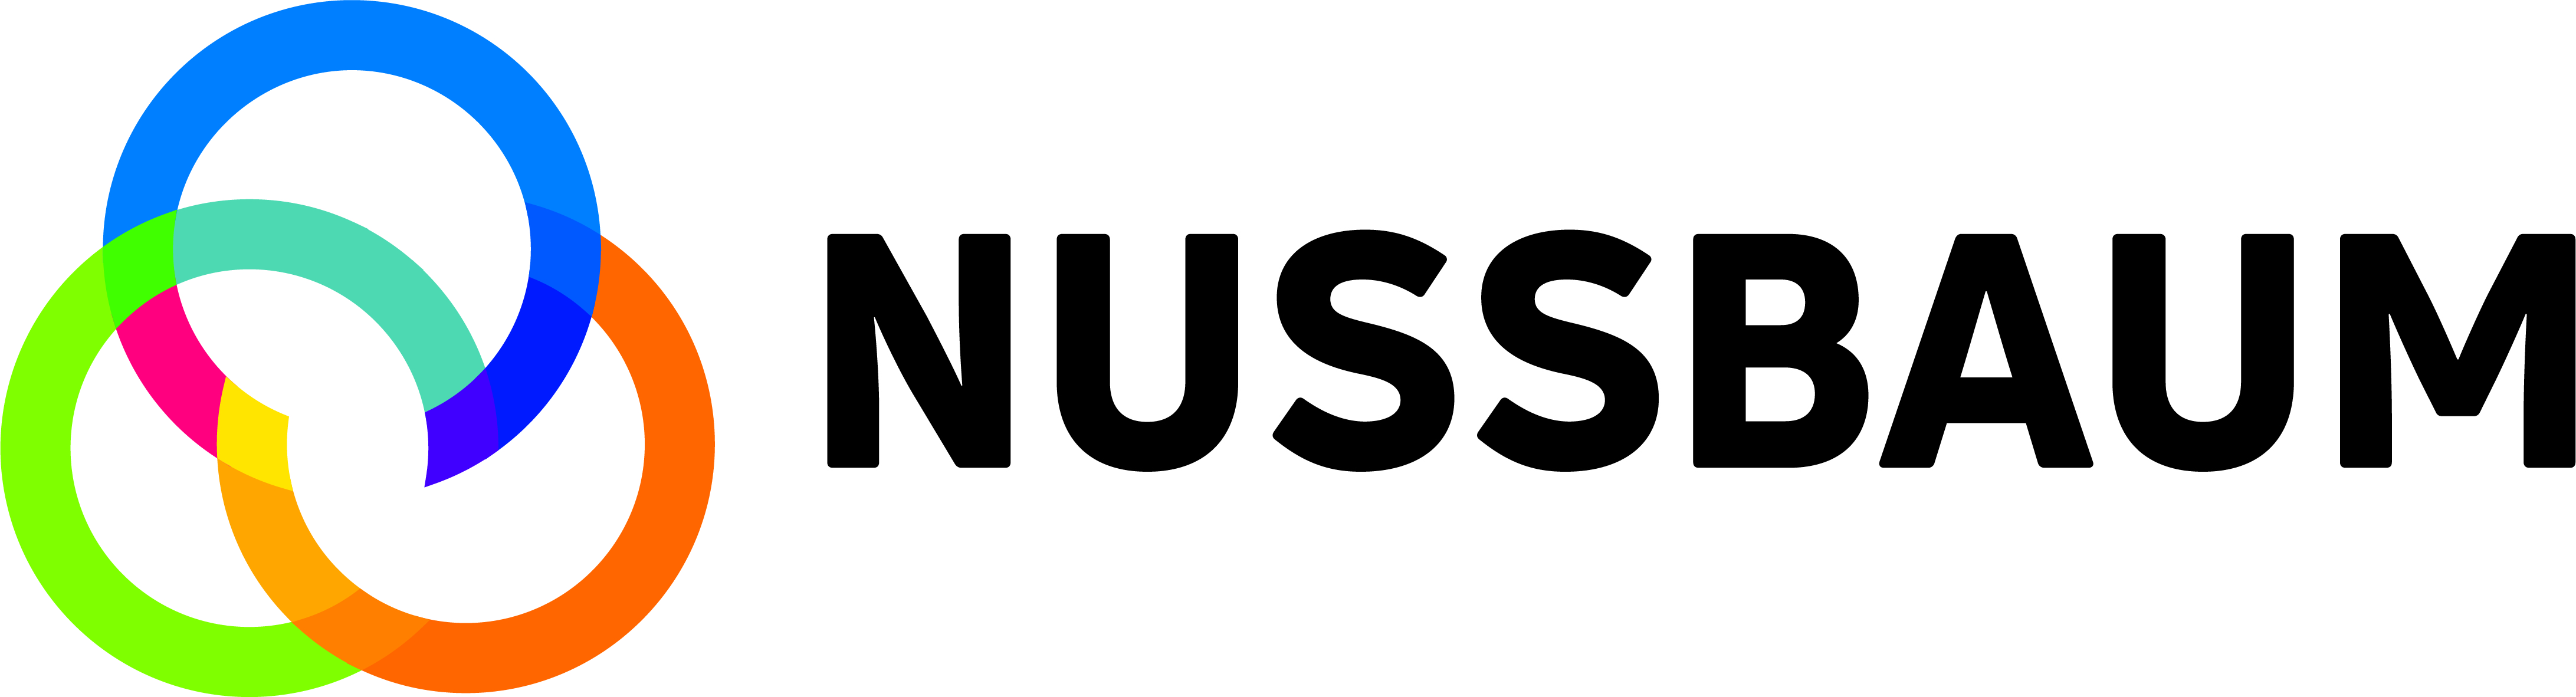 Nussbaum Medien Logo